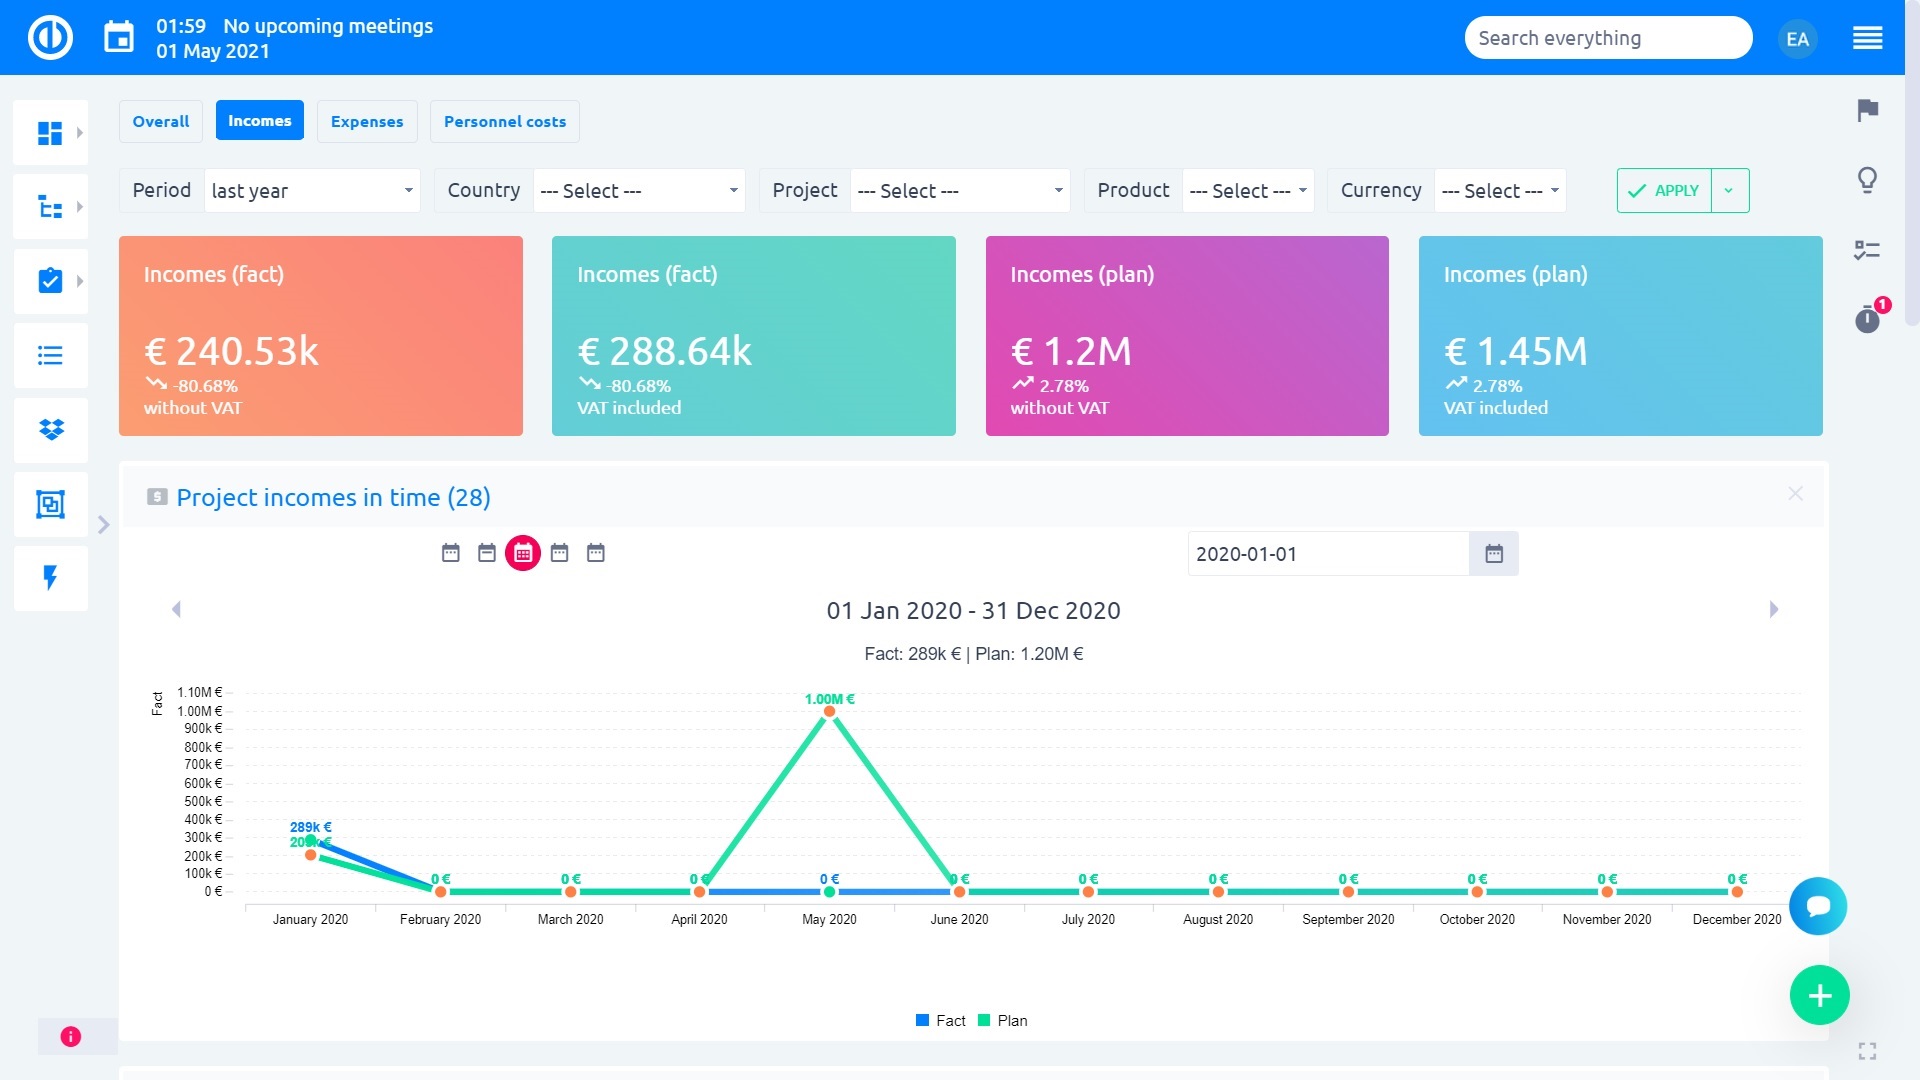 Easy Redmine 2018 - Dashboard för finanschefen - toppprojekt